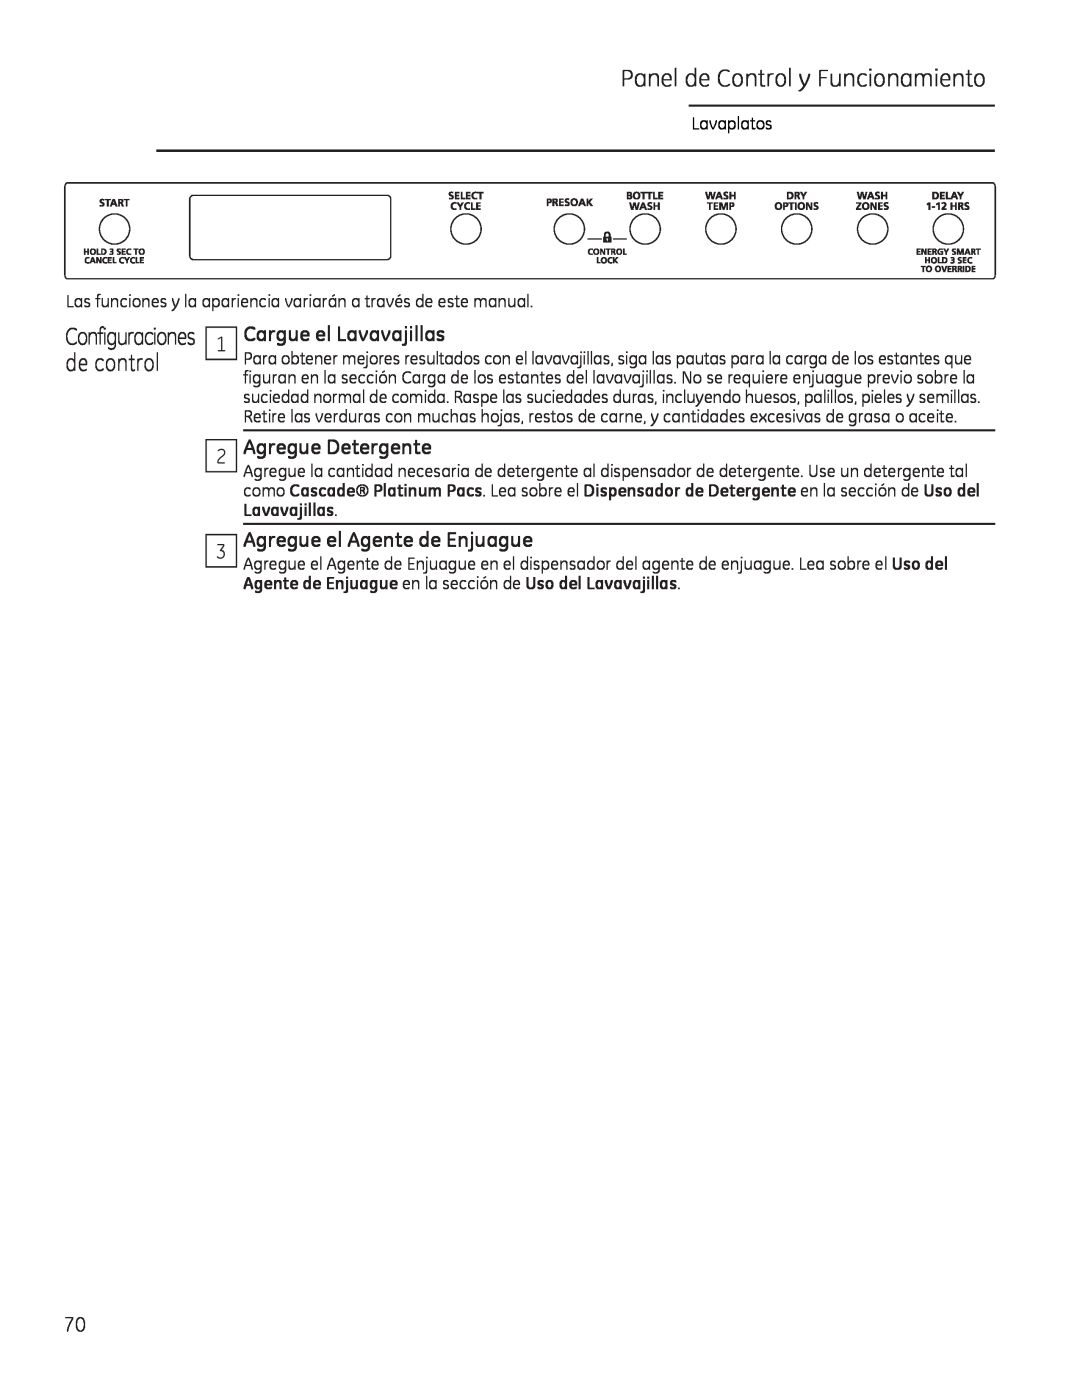 GE Monogram 49-55086 owner manual Panel de Control y Funcionamiento, Cargue el Lavavajillas, Agregue Detergente 